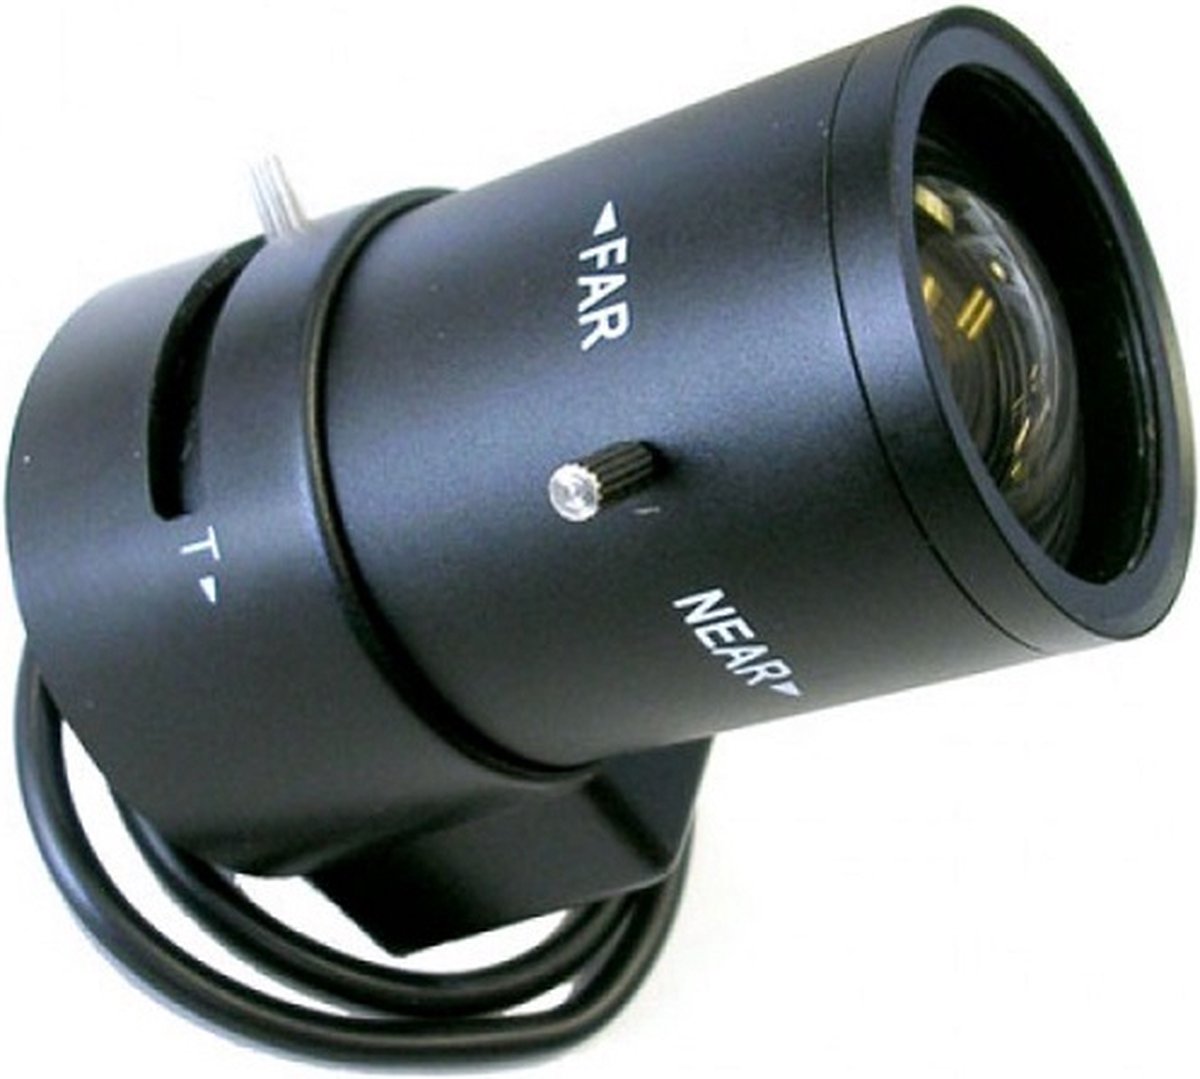 Vista DC Auto Iris Lens 2,9 - 8,2 mm - Infrarood Gecorrigeerd - Variabele Brandpuntafstand